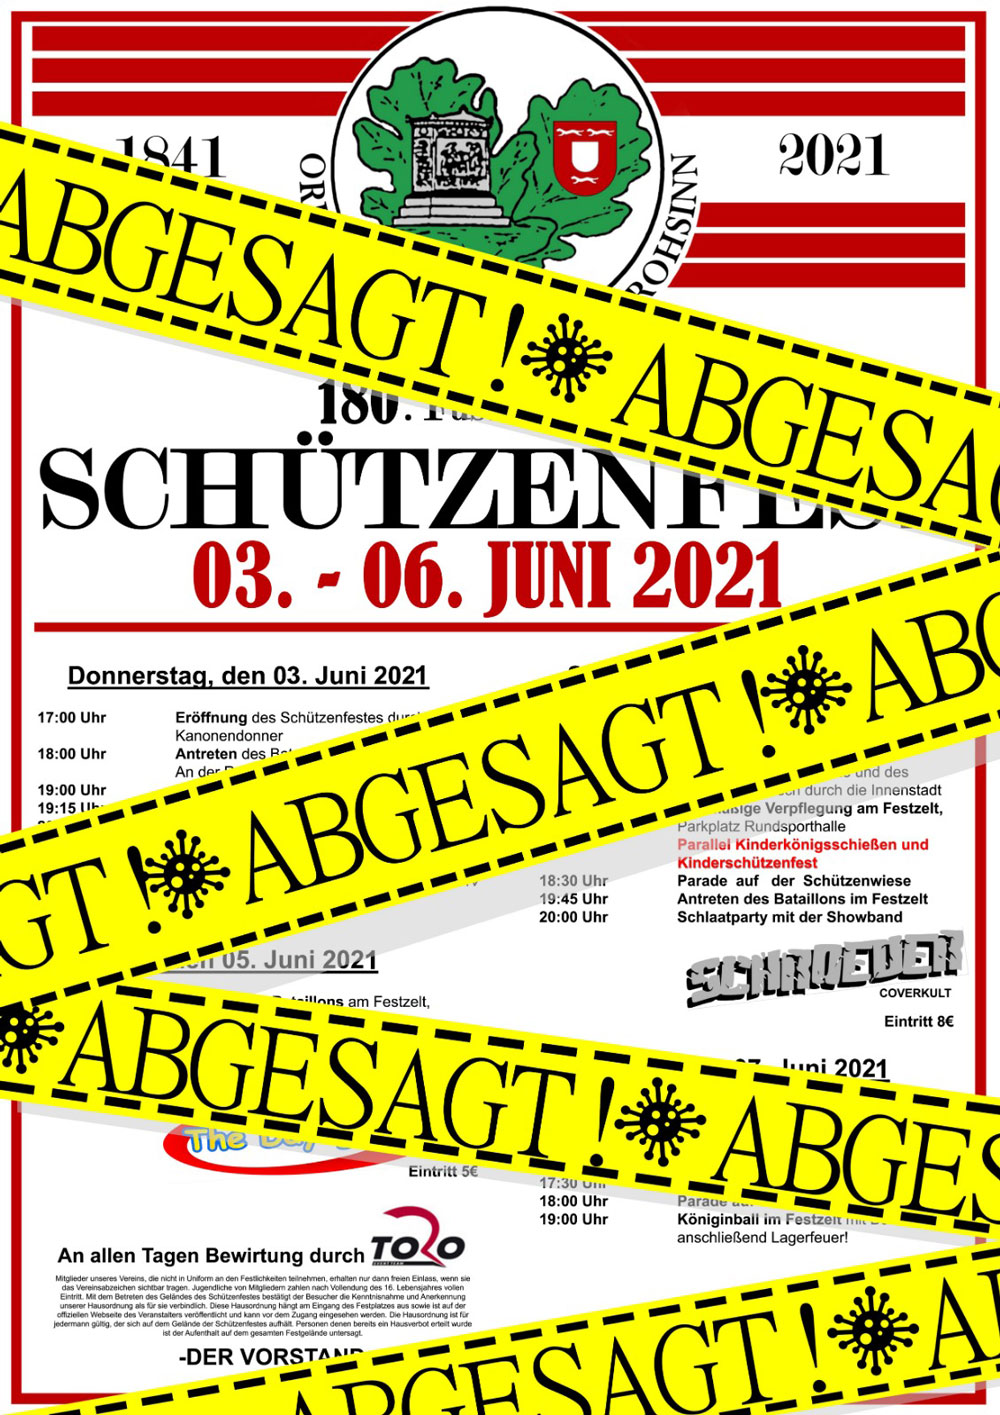 Schuetzenfest 2021 Absage